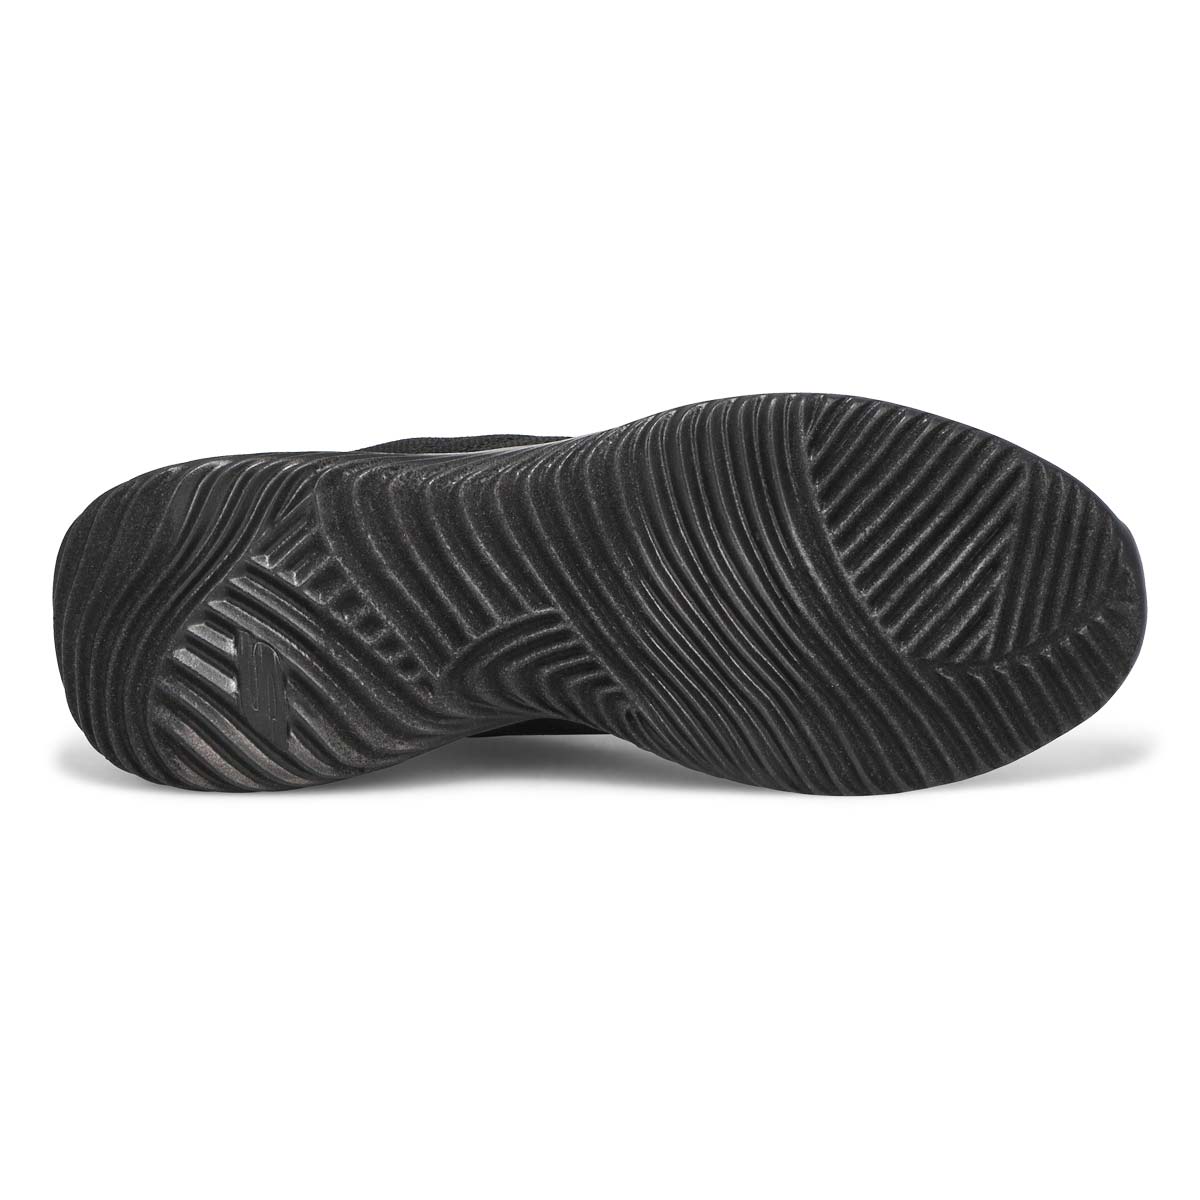 Men's Bounder Sneaker - Black